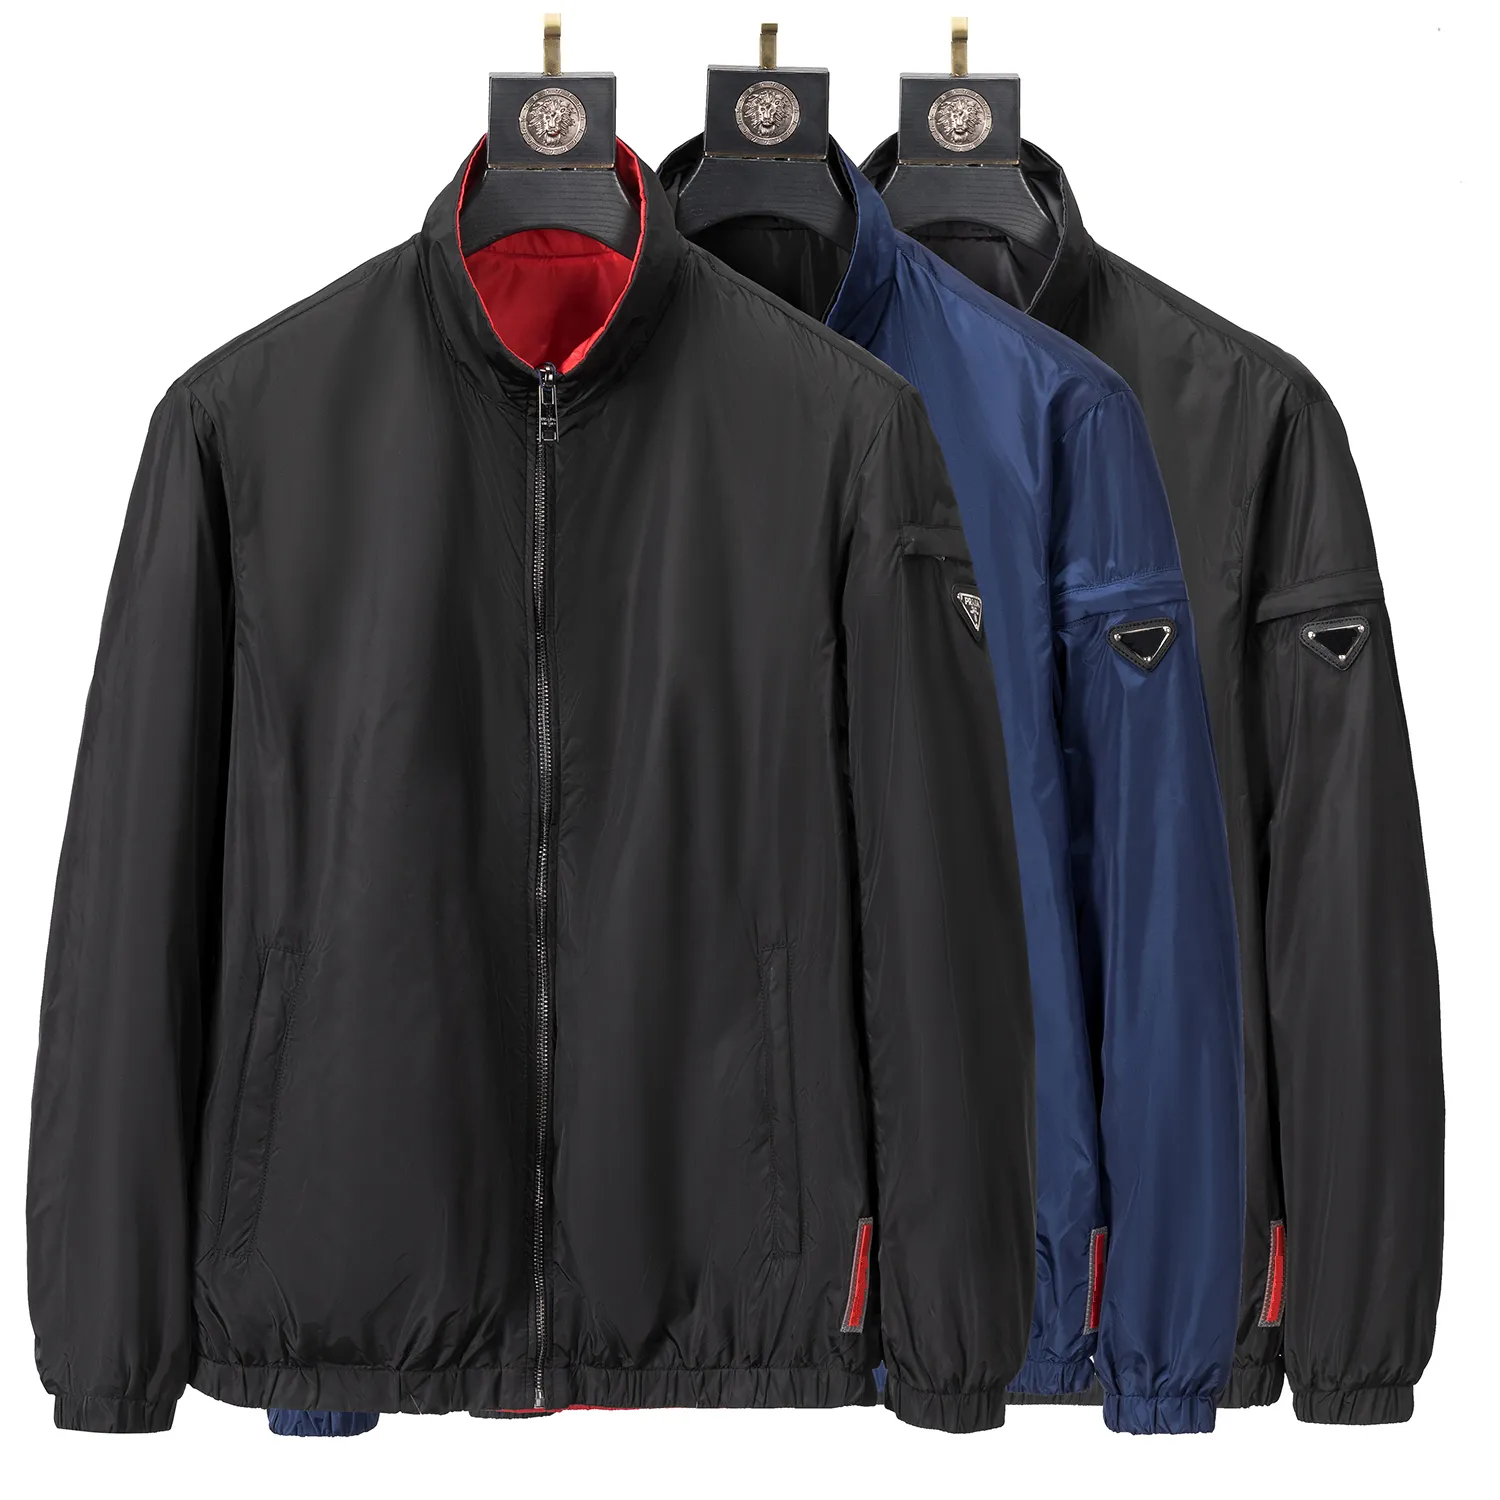 diseñadores chaqueta abrigo para hombres chaquetas de invierno chaqueta para hombres de alta calidad chaquetas de marca suave suave estampados letras bordado streatwear tamaño m-xxxl